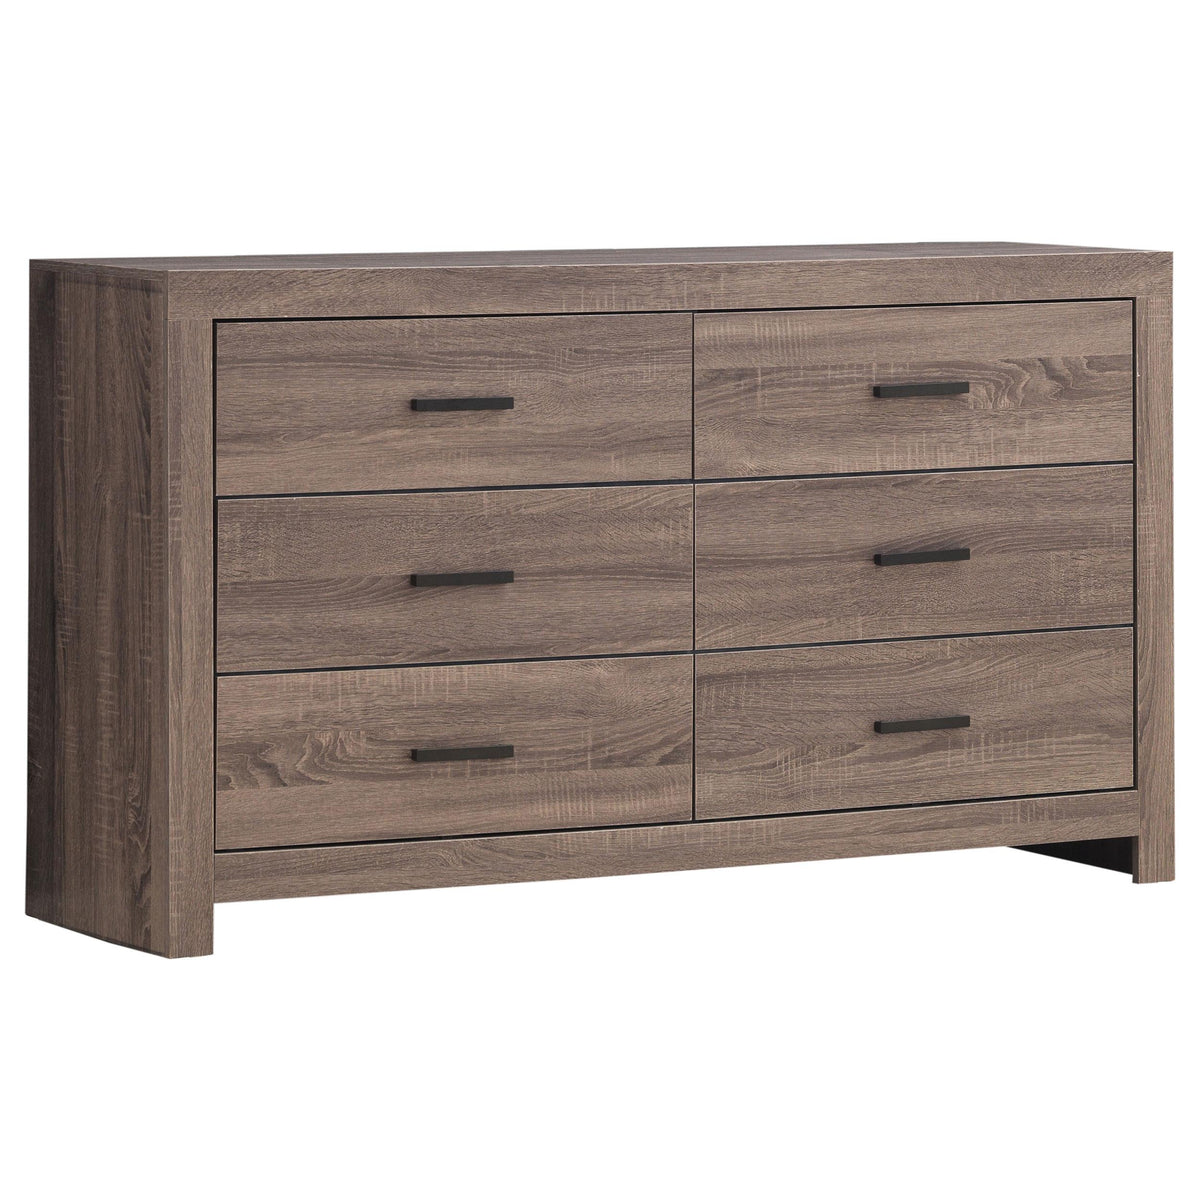 Brantford 6-drawer Dresser Barrel Oak Brantford 6-drawer Dresser Barrel Oak Half Price Furniture